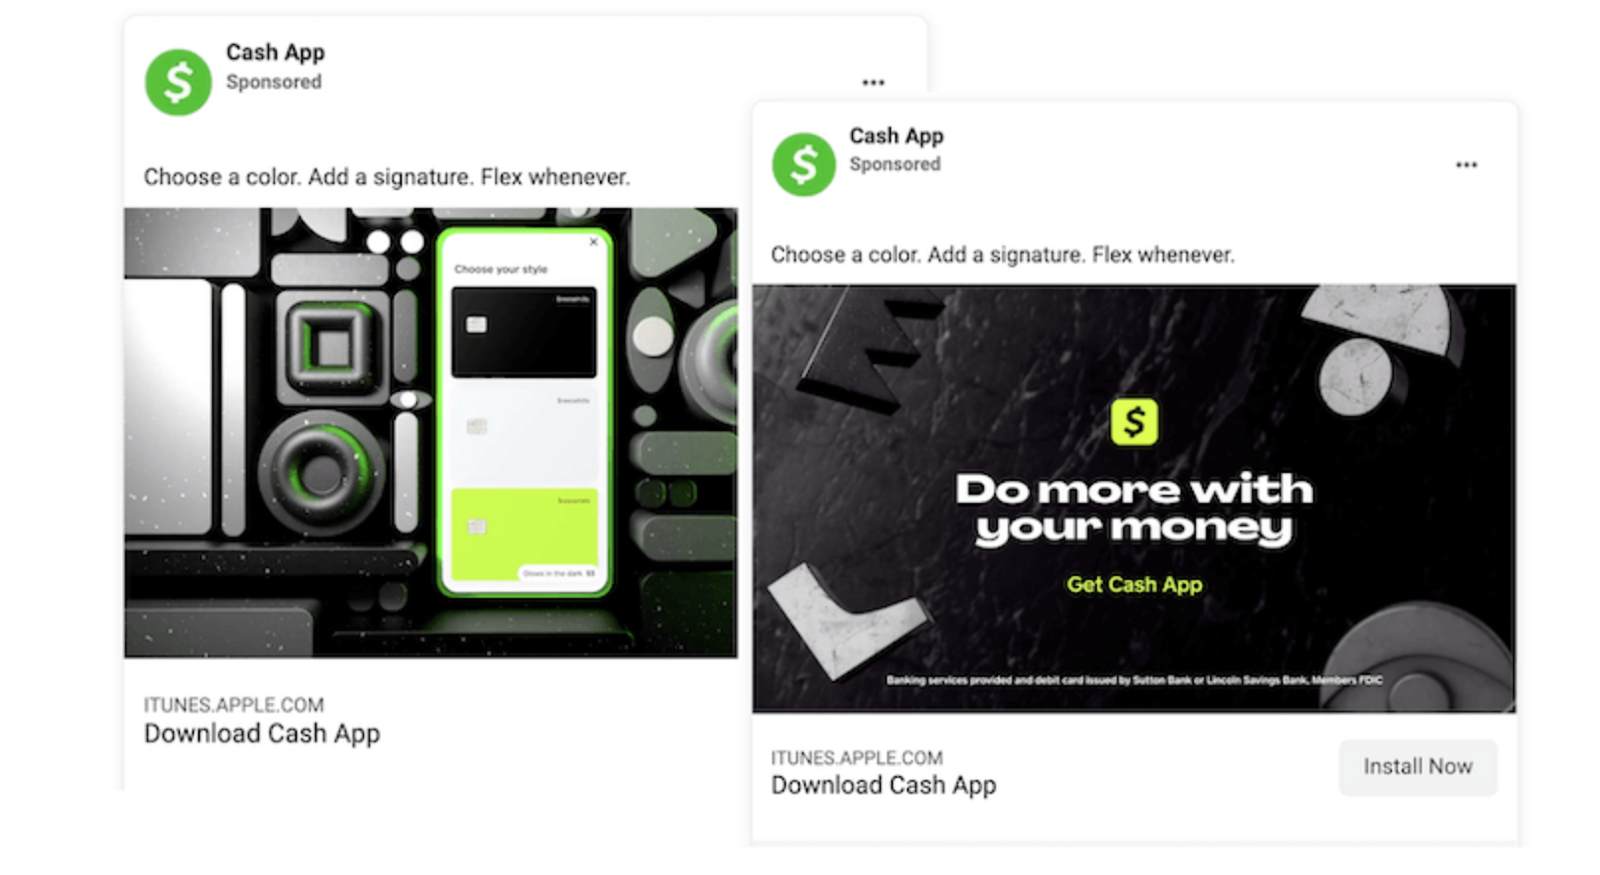 L'app Cash presenta un testo breve e diretto nel suo annuncio su Facebook